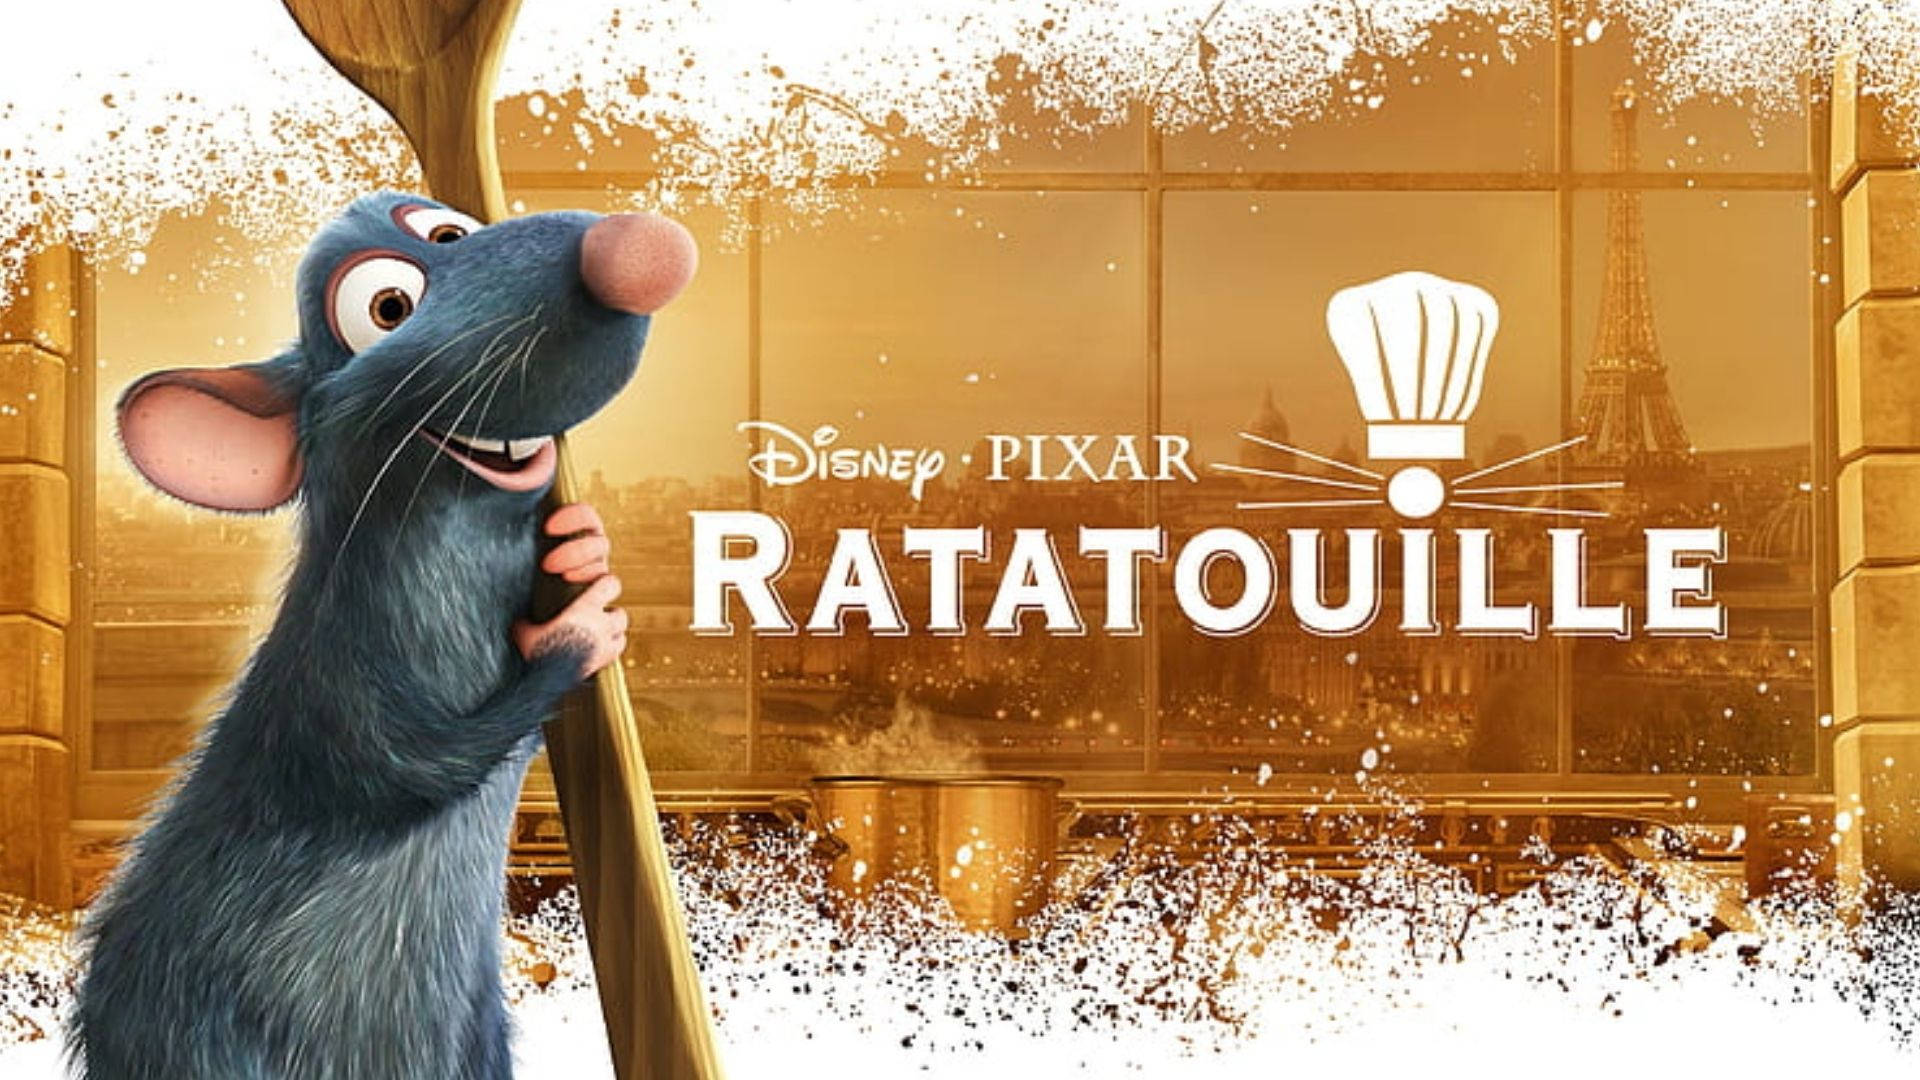 Disney Pixar Ratatouille Wallpaper